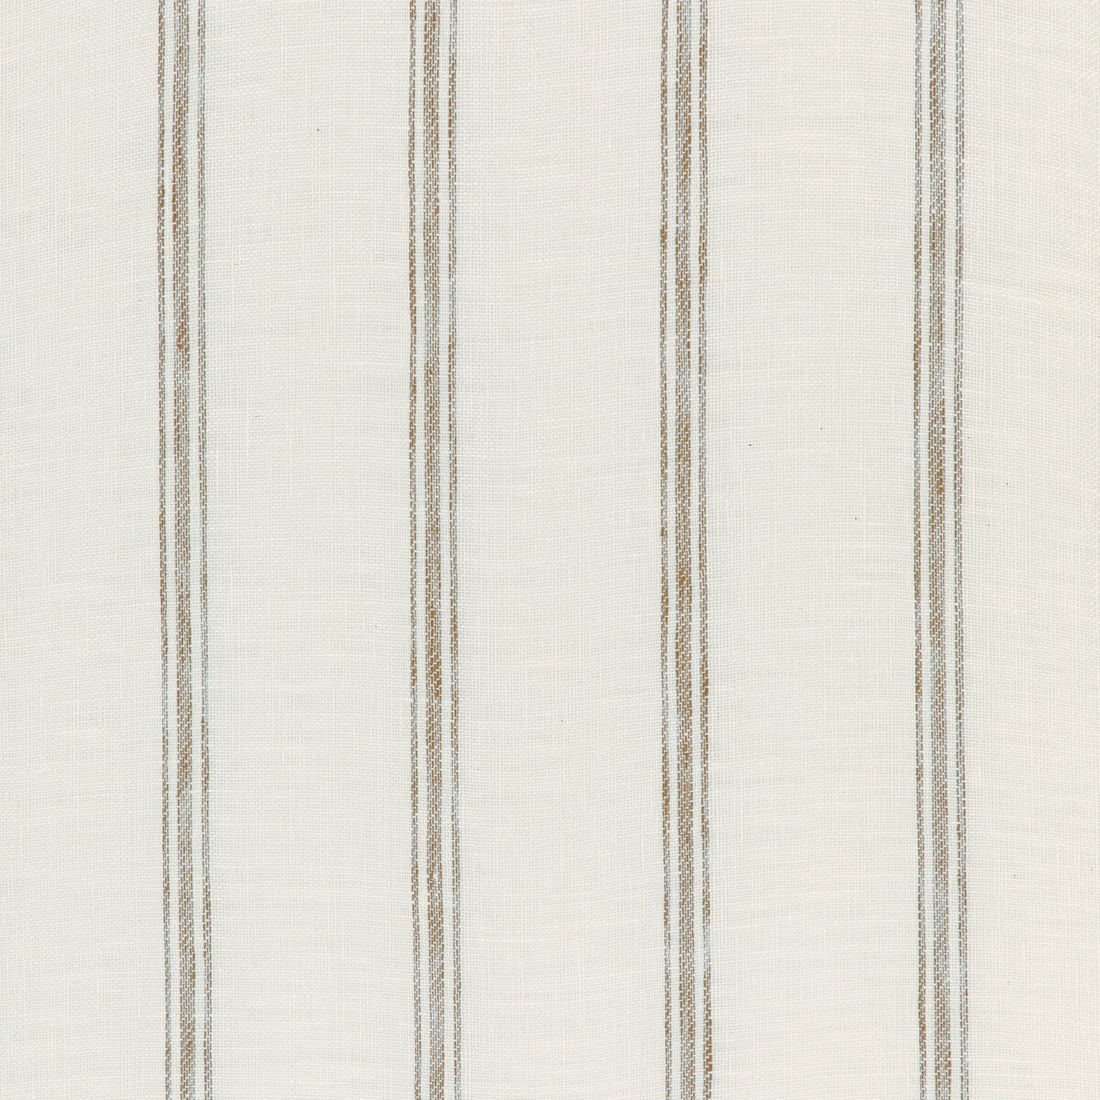 Kravet Design fabric in 4848-1 color - pattern 4848.1.0 - by Kravet Design